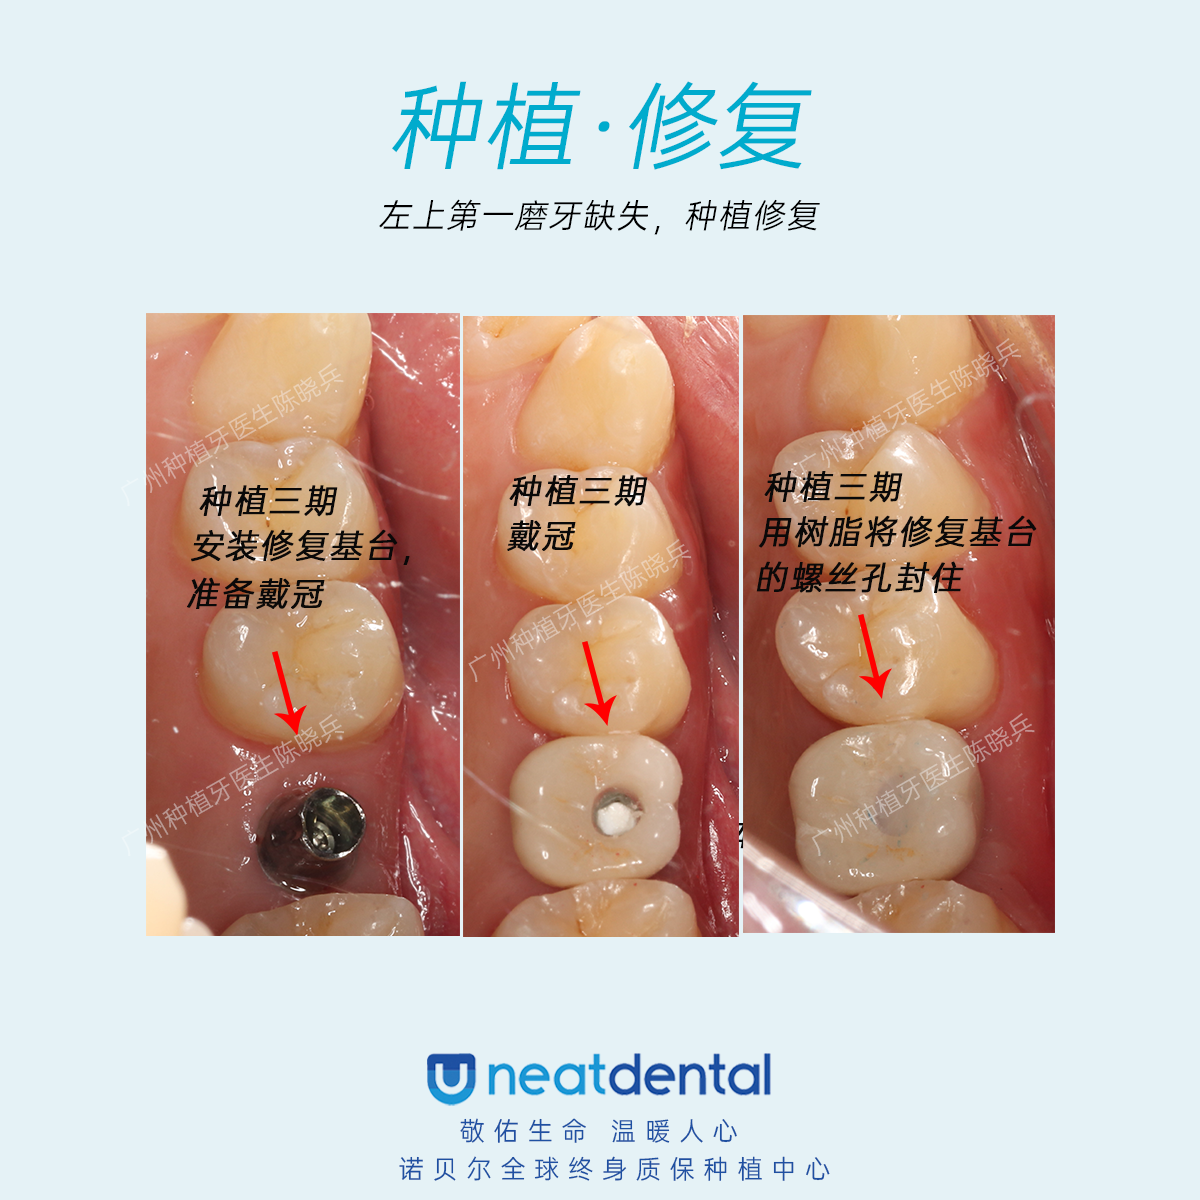 最后一点,关于医生的种植牙案例数量和效果,这也是患者了解种植牙